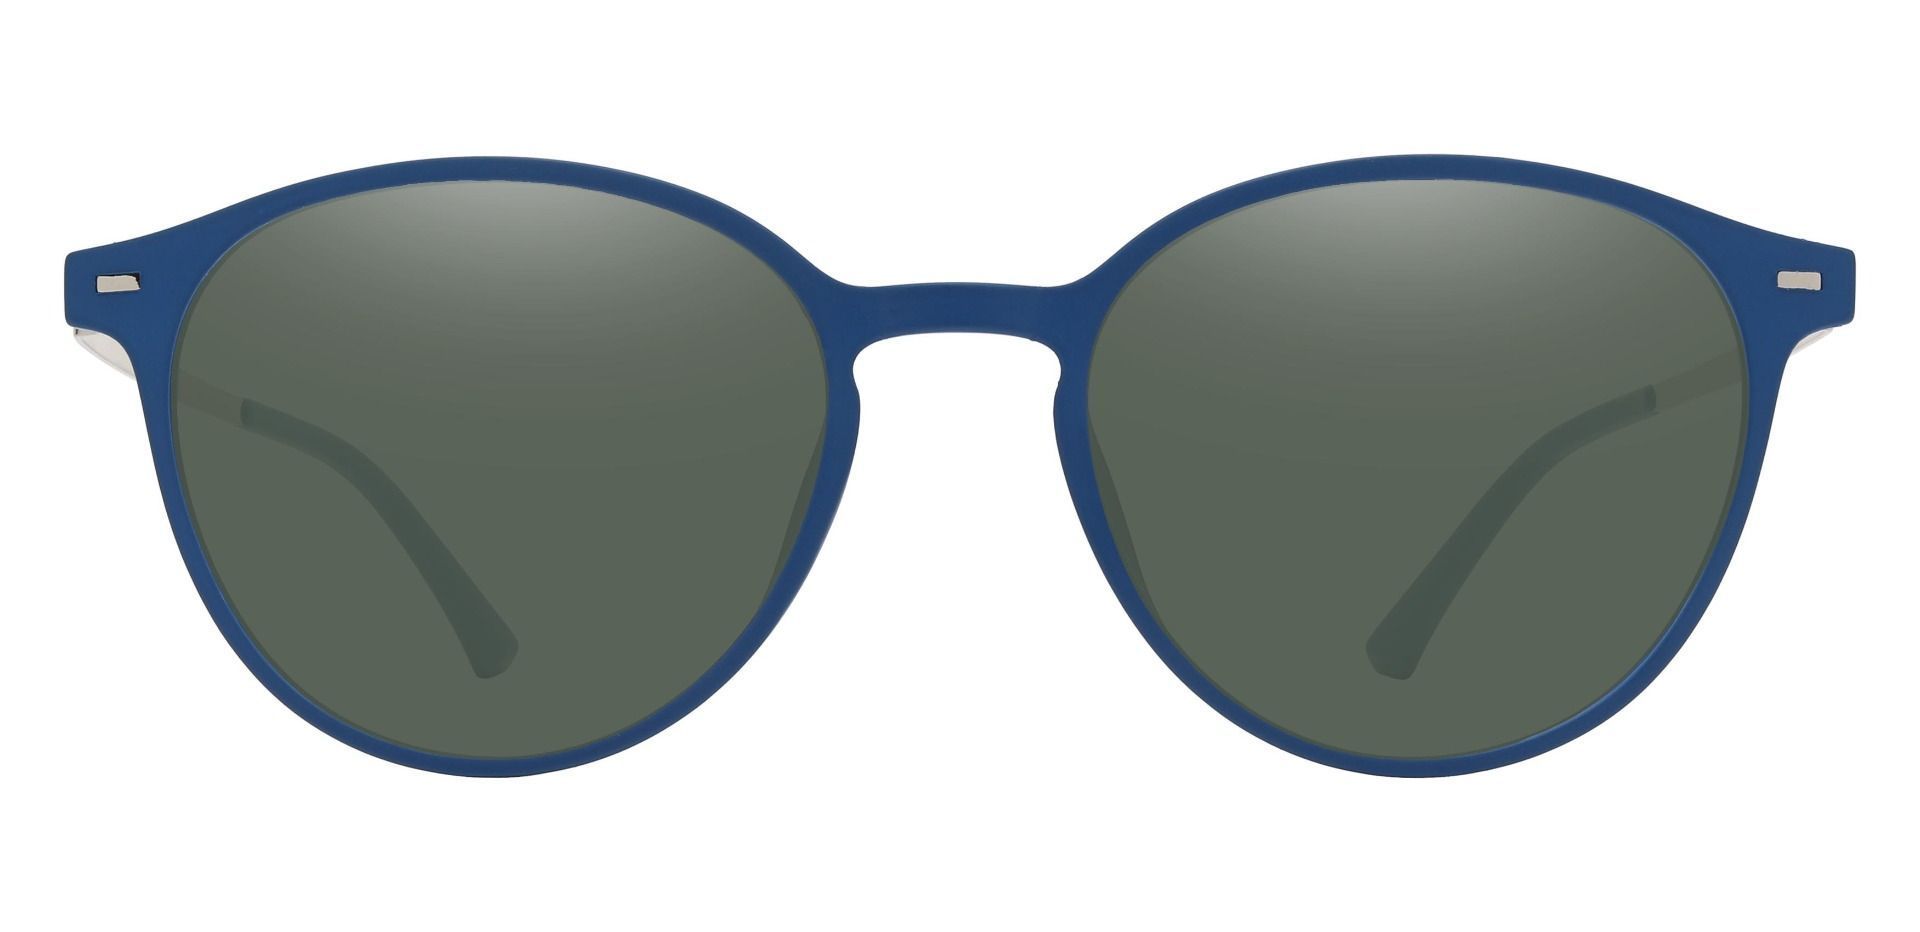 Springer Round Prescription Sunglasses - Blue Frame With Green Lenses